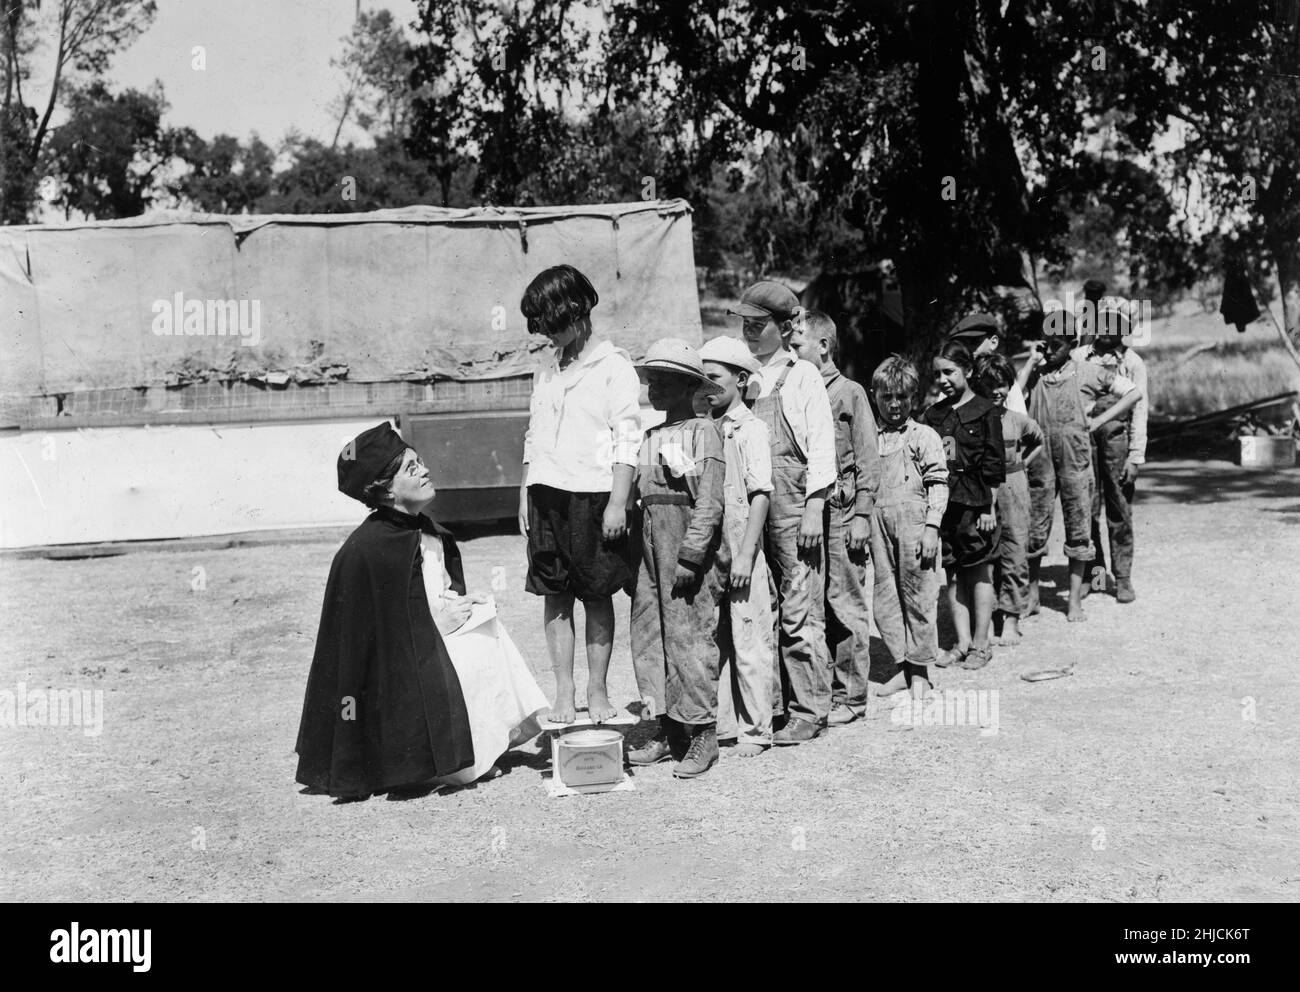 Enfants en tubércle dans le canyon de Santa Margarita dans le comté de San Luis Obispo, Californie, obtenant leur "poids" juste avant de quitter le camp, 1920.Ce camp a été inauguré par les Juniors et la Section de la Croix-Rouge en coopération avec le comté et l'Association de la tuberculose. Banque D'Images